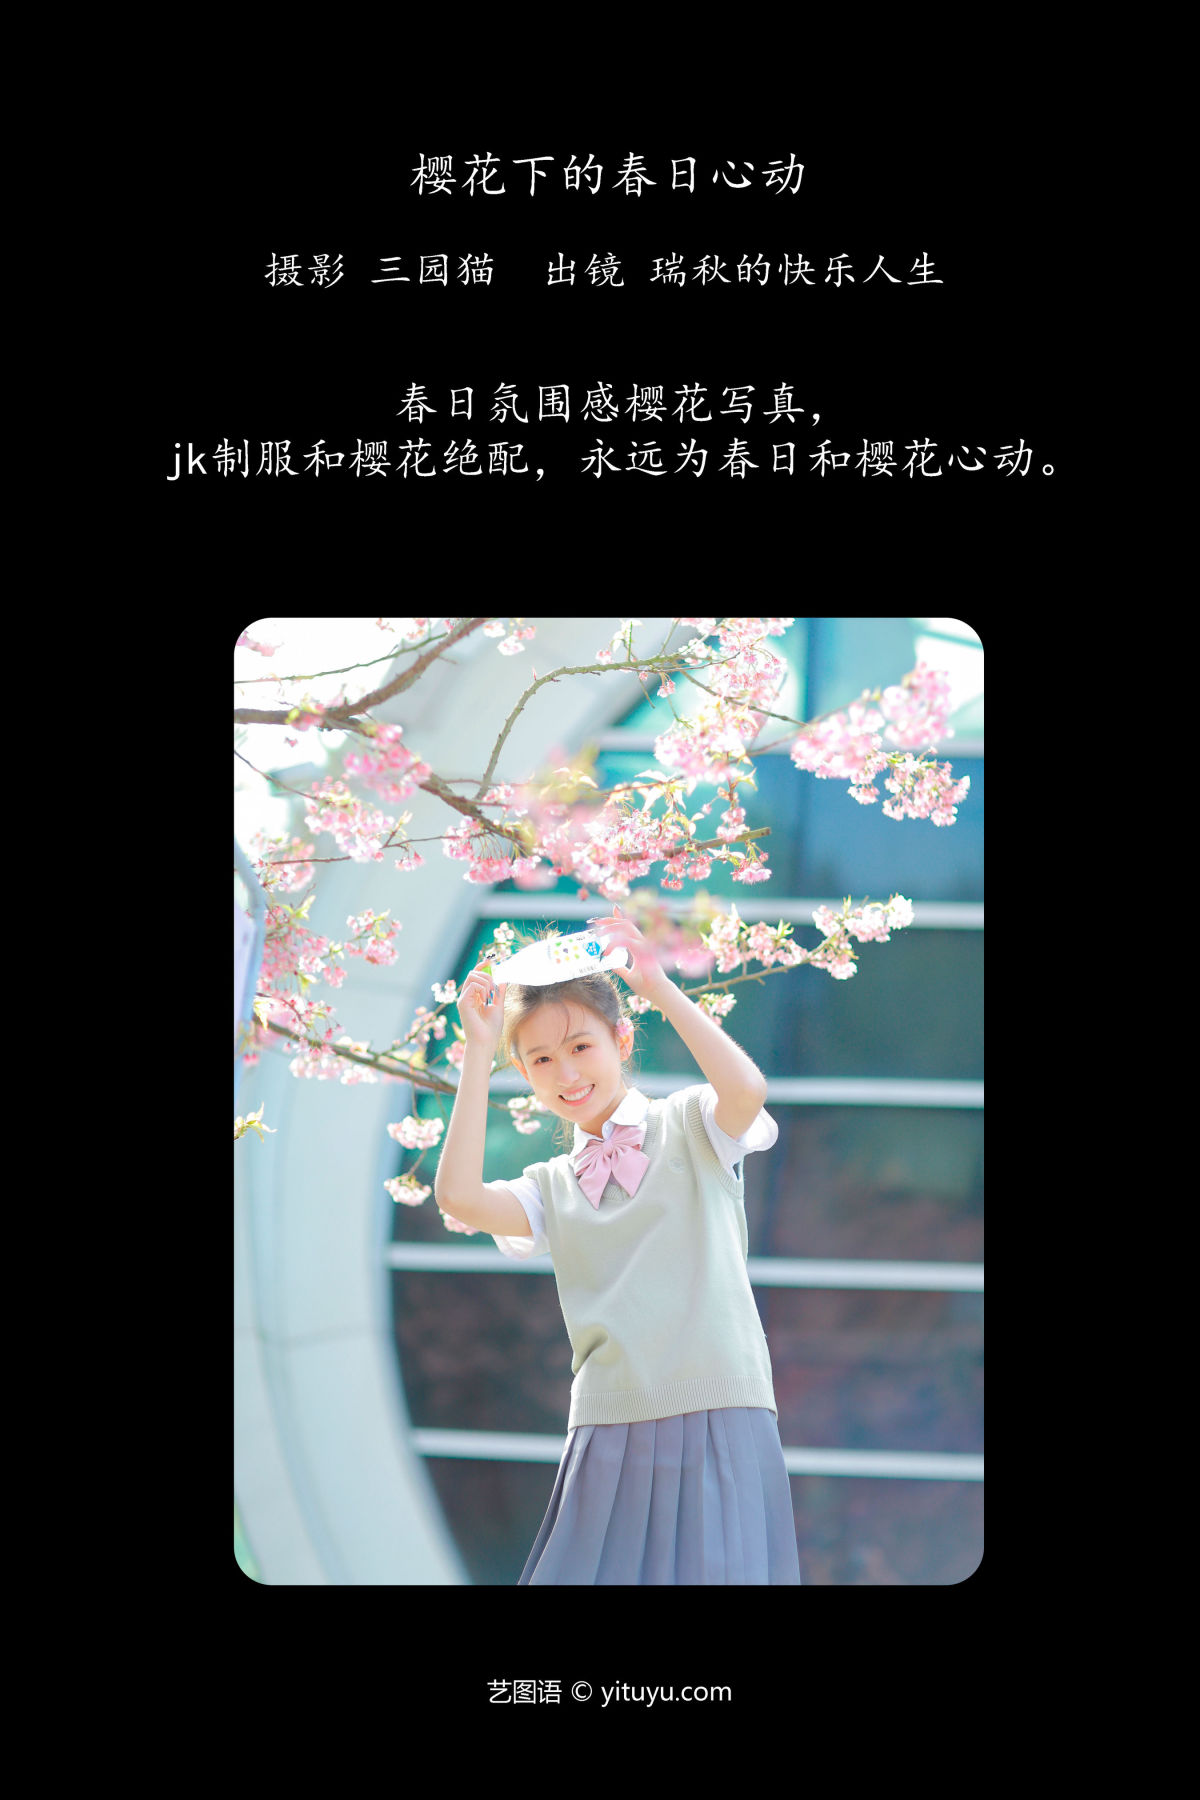 三园猫_瑞秋的快乐人生《樱花下的春日心动》美图作品图片2